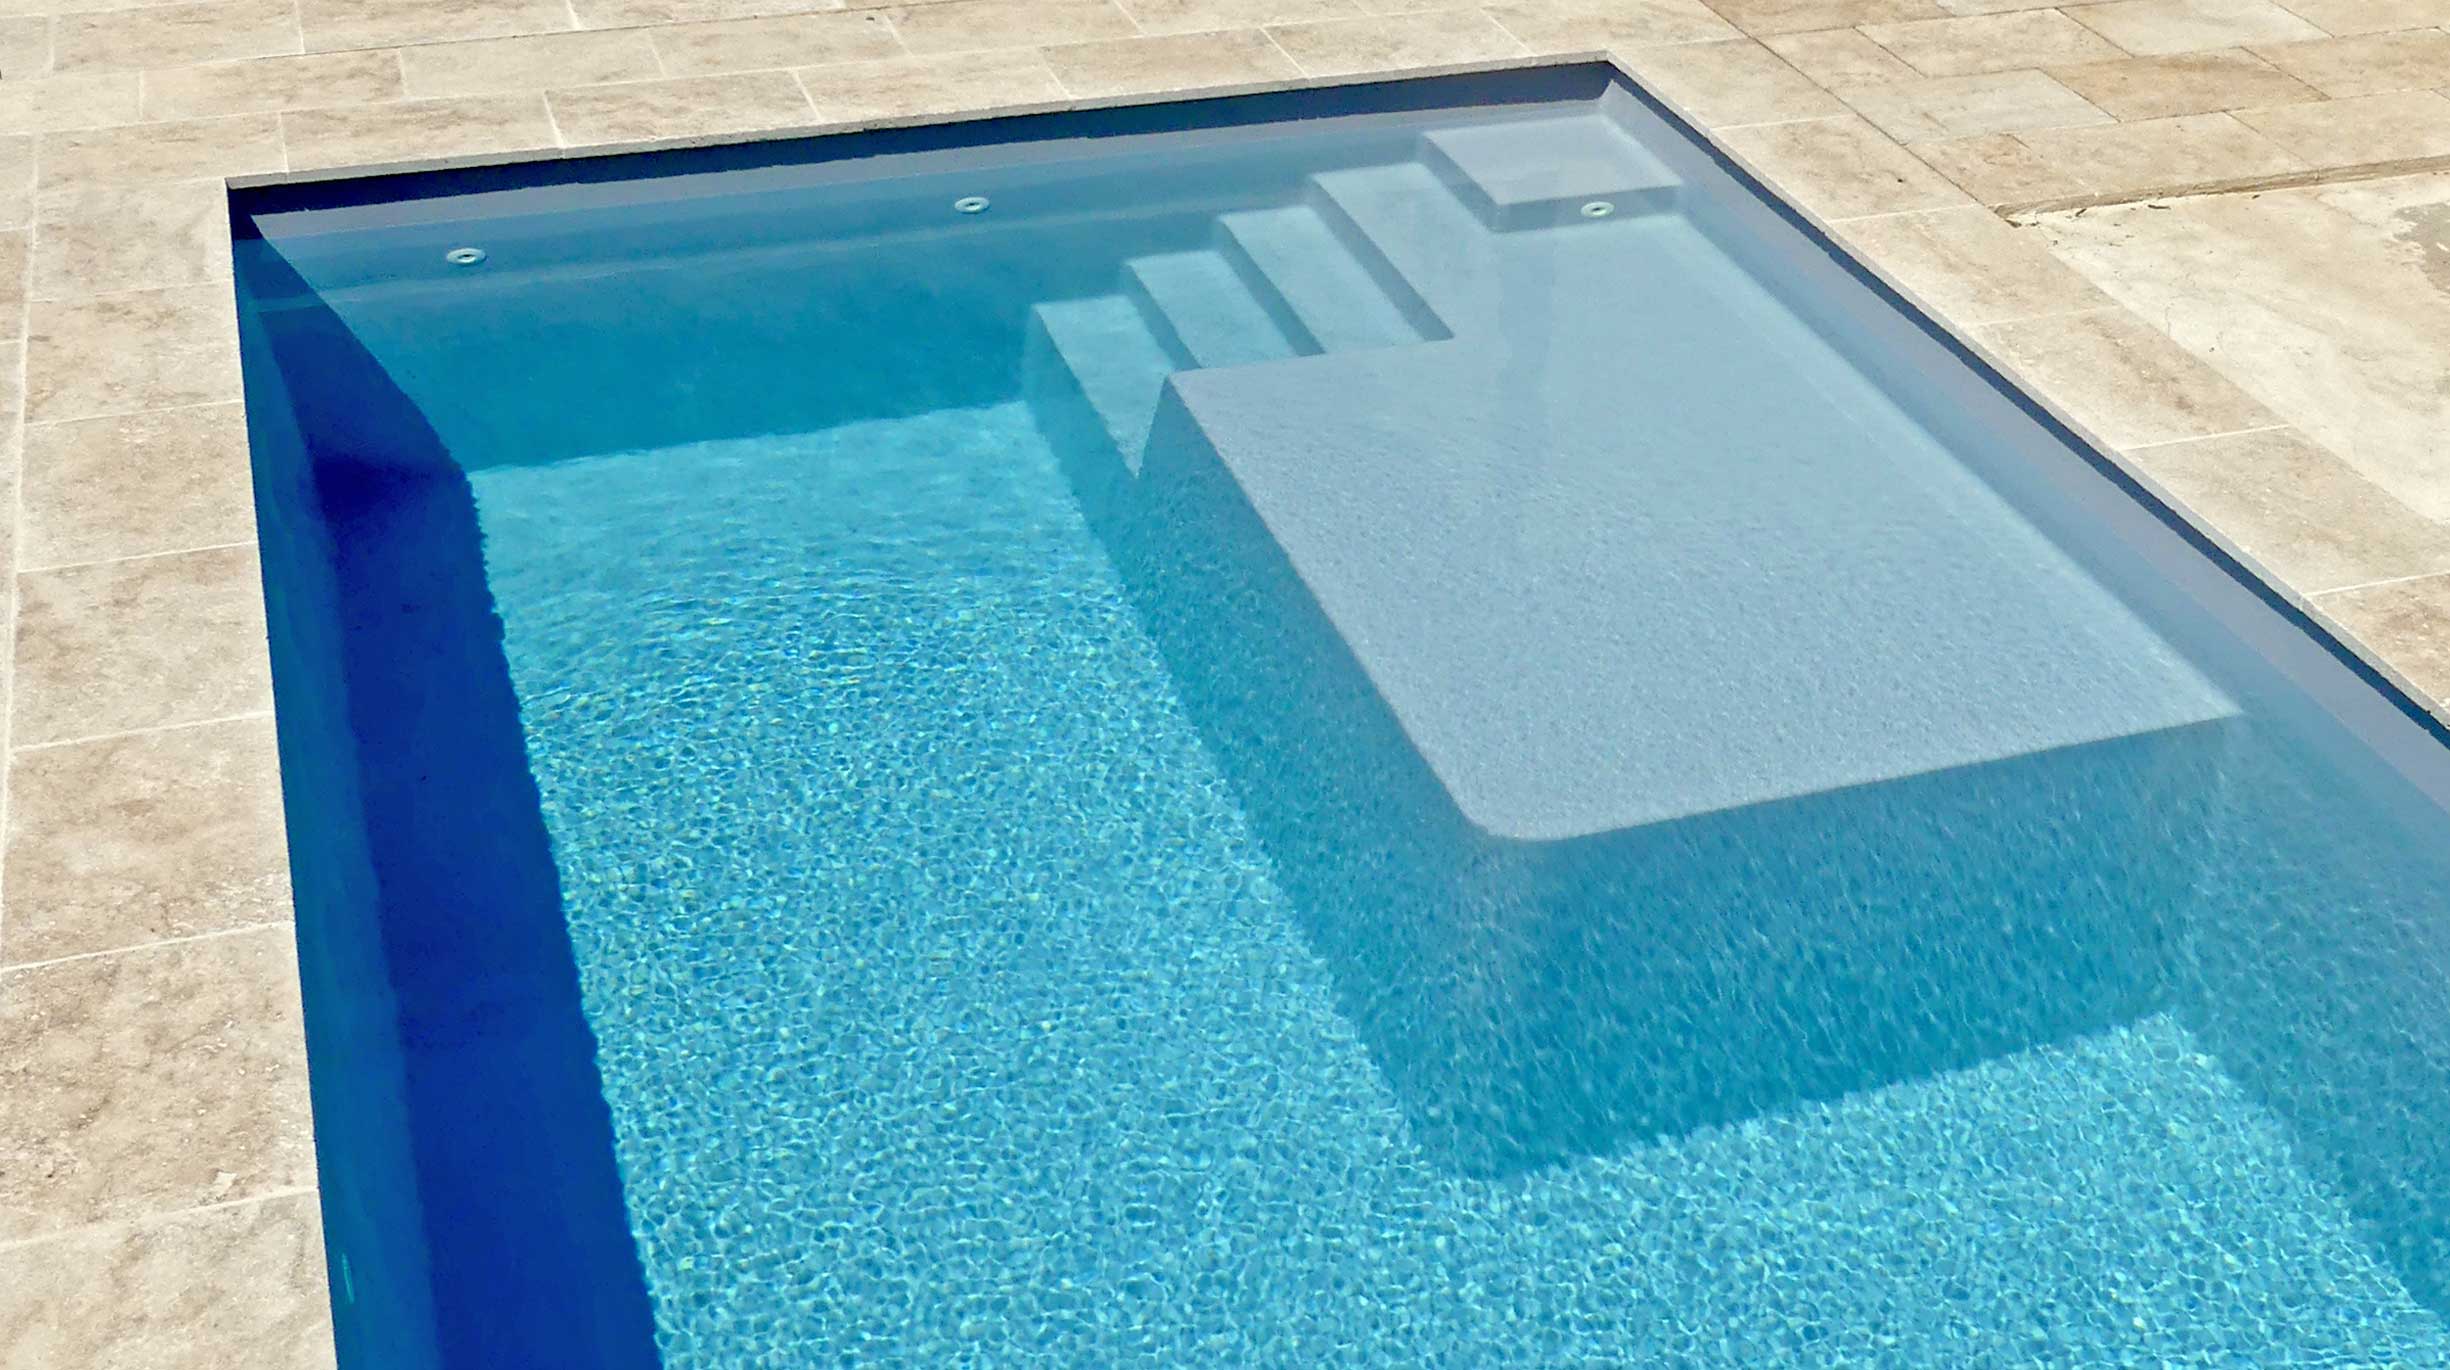 gp_actu_aout_piscine-famille_canet Des piscines familiales design conçues pour s’amuser et se détendre